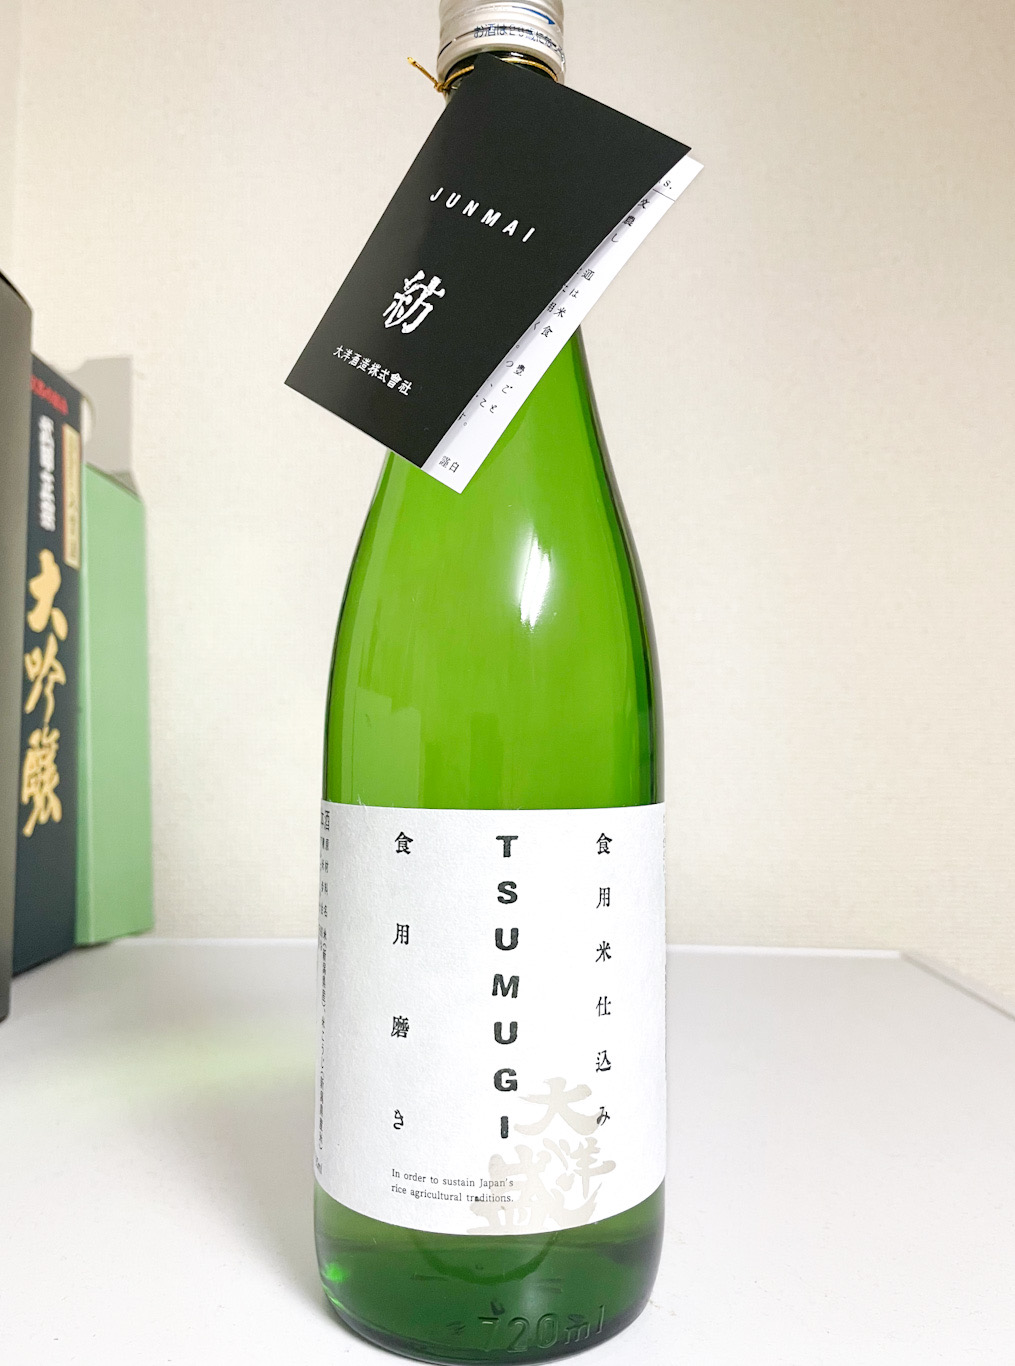 珍しい食用の米を磨いて作った日本酒、大洋酒造の「TSUMUGI」を飲んでみた